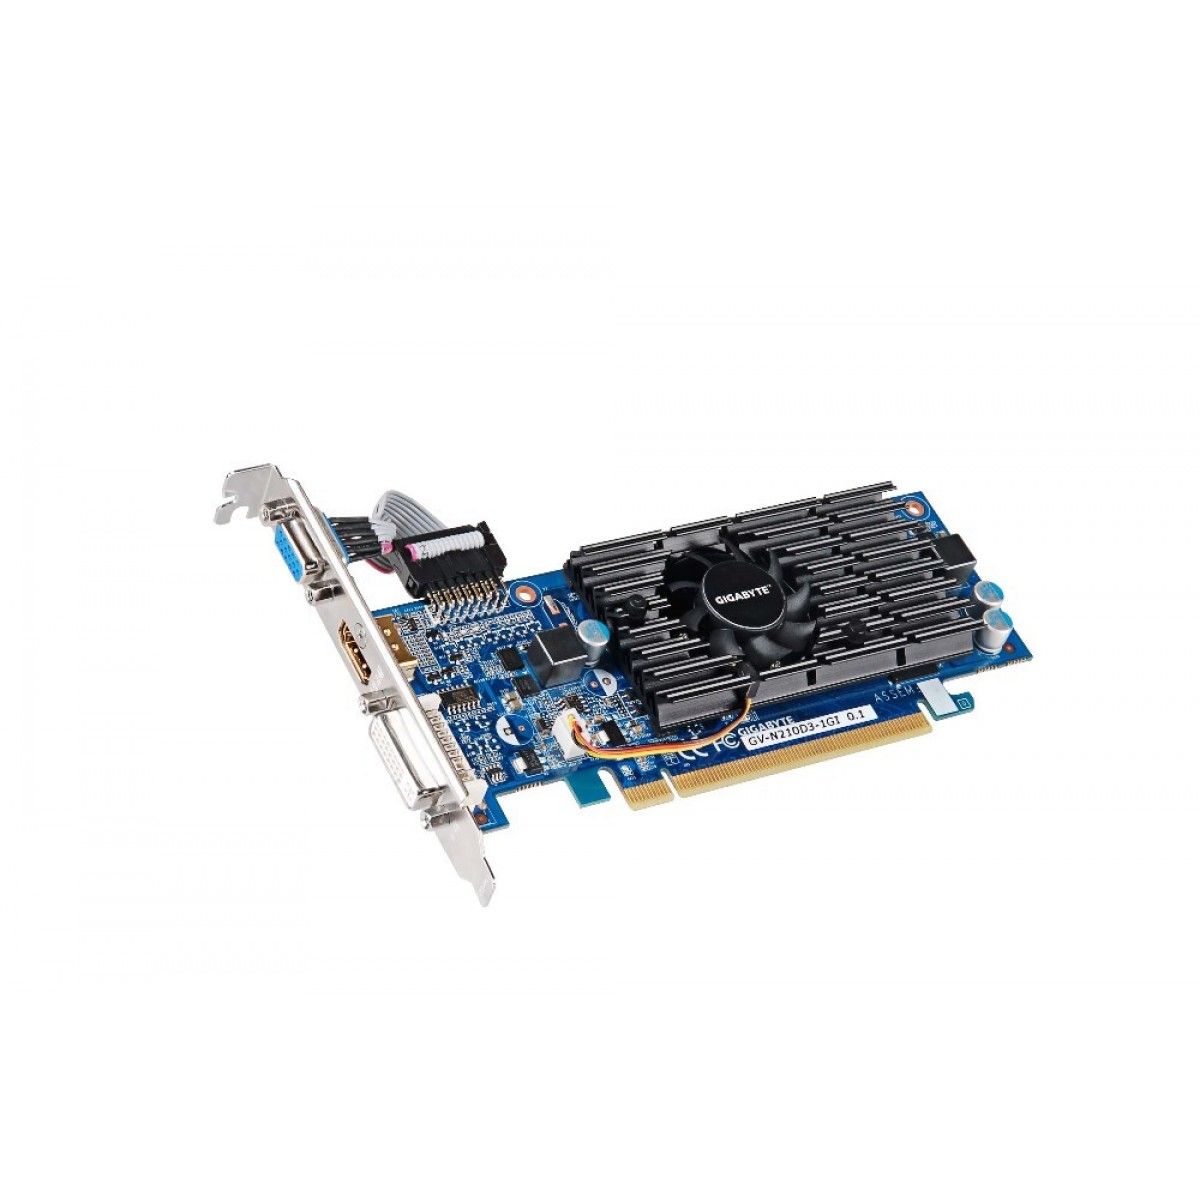 Placa de Vídeo Gigabyte GeForce 210, 1GB, DDR3, 64bit, GV-N210D3-1GI